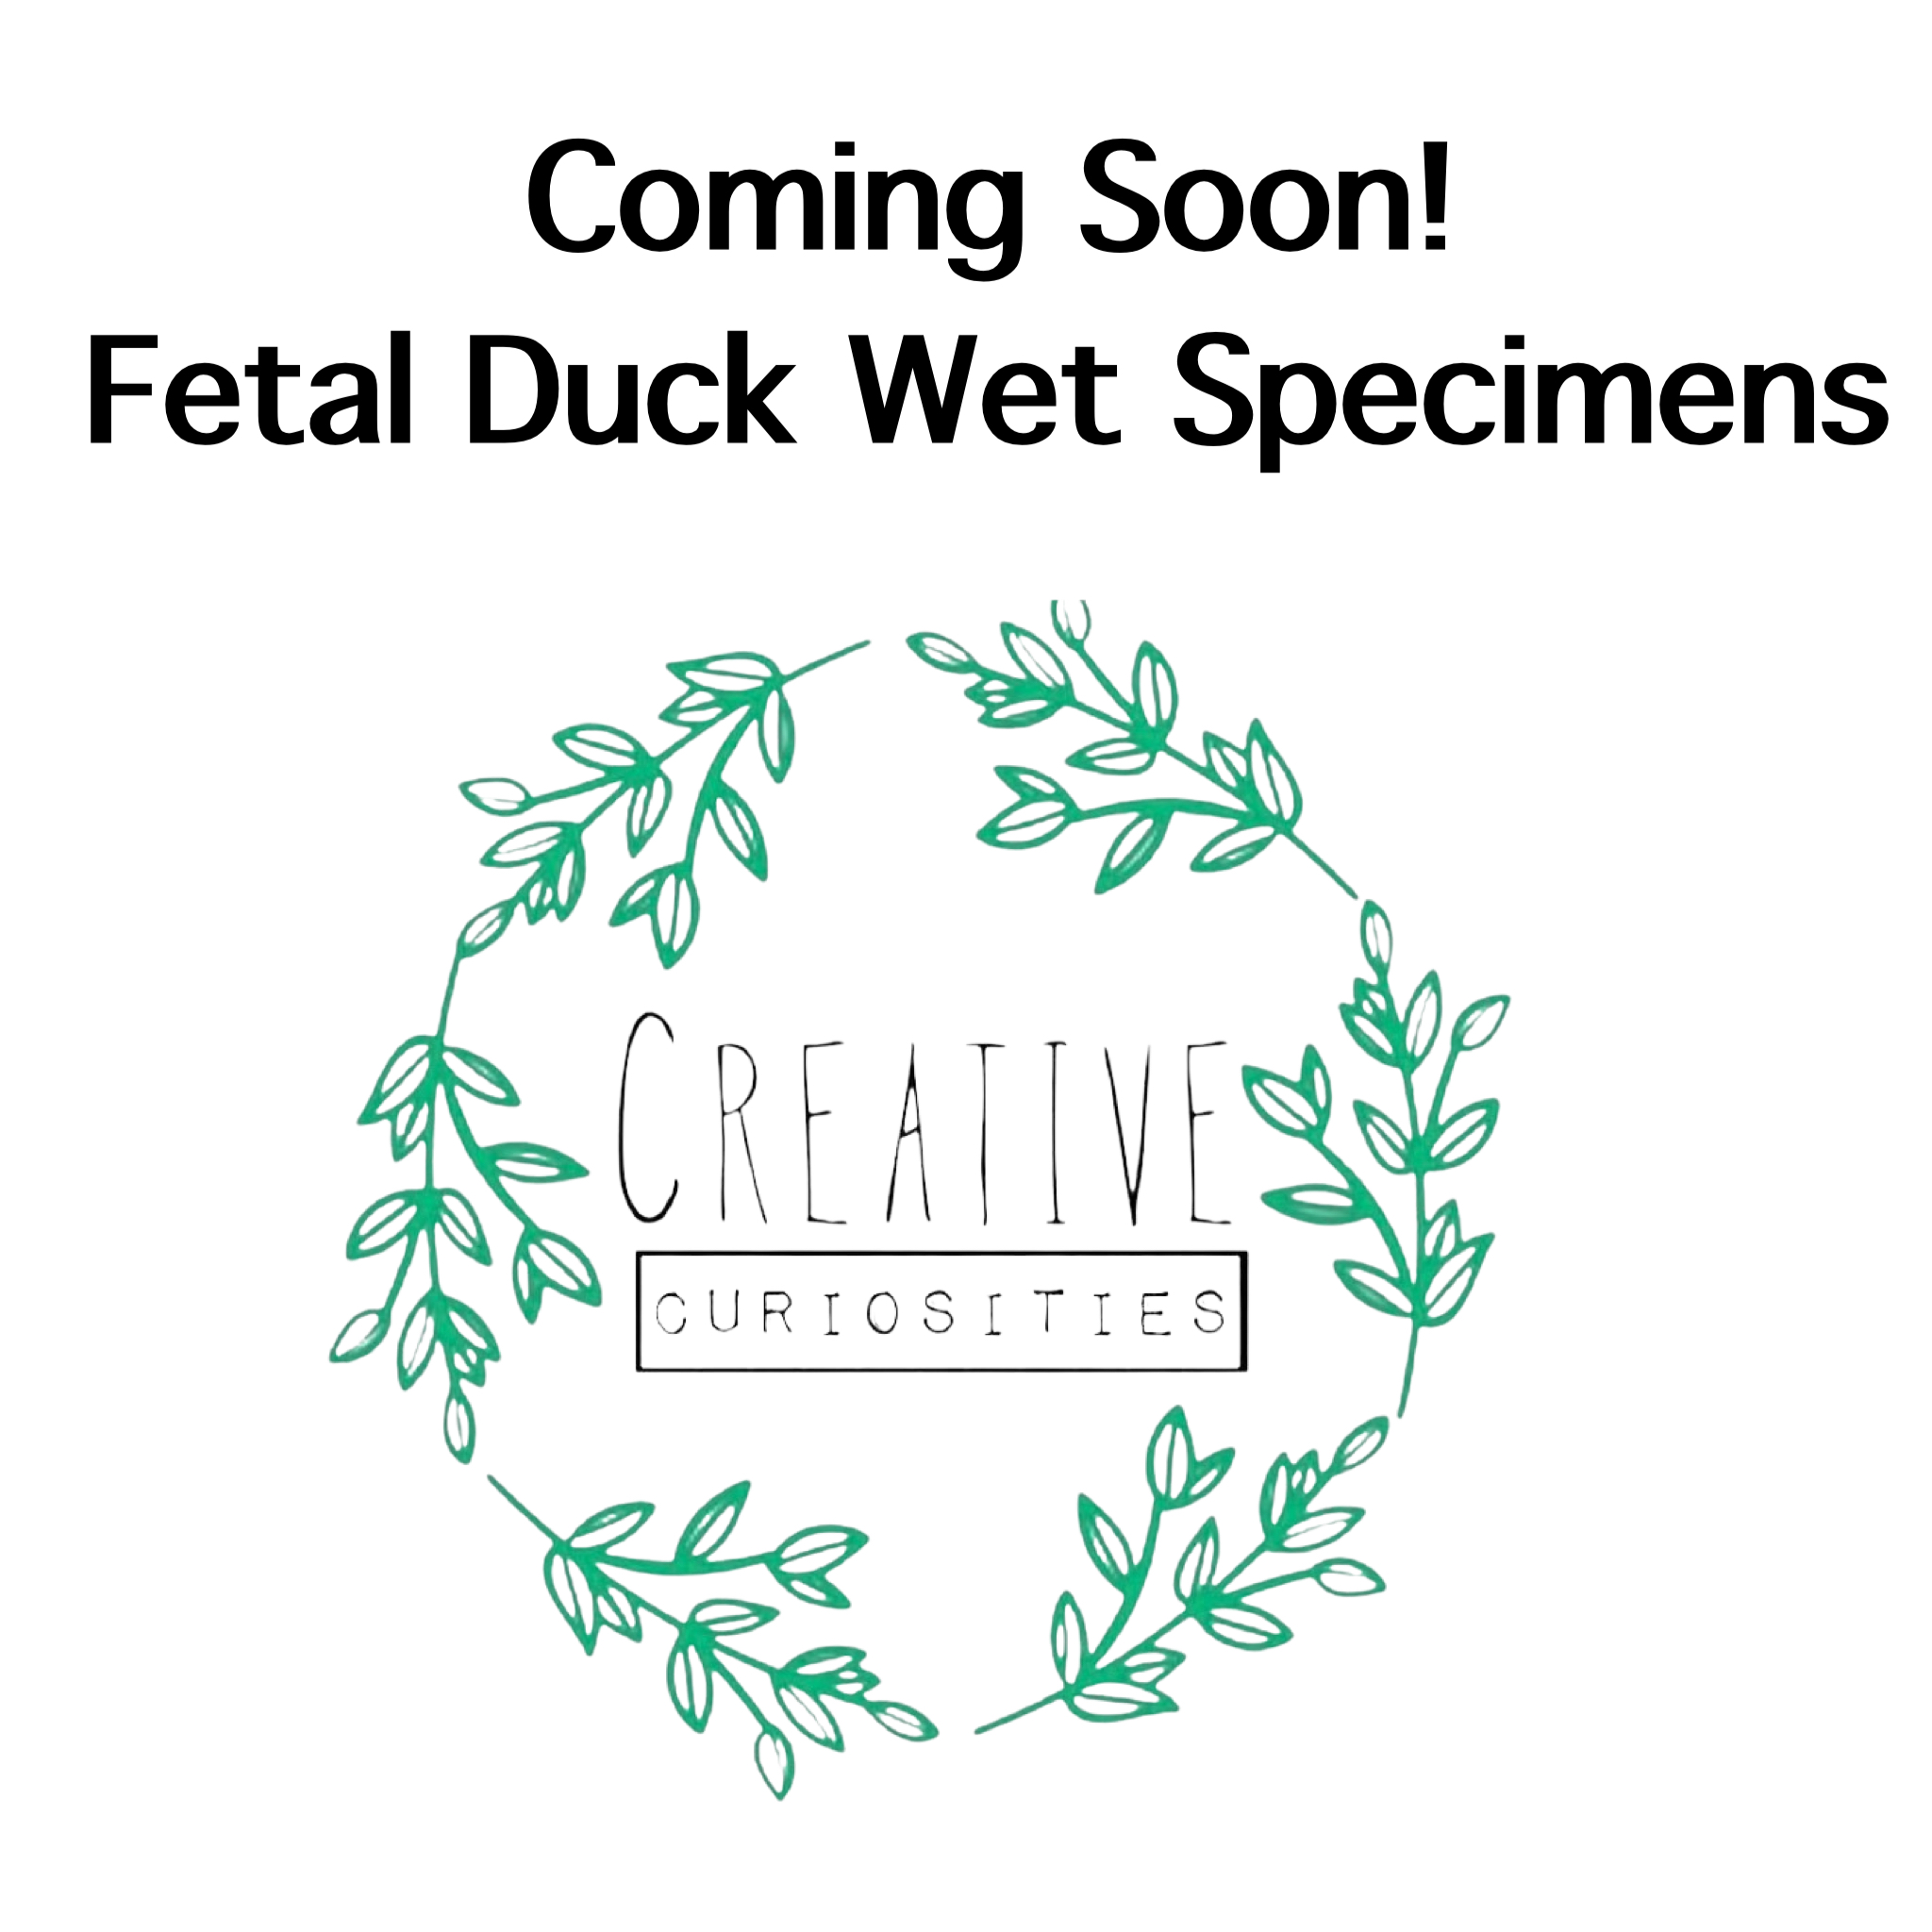 Fetal Duck Wet Specimens